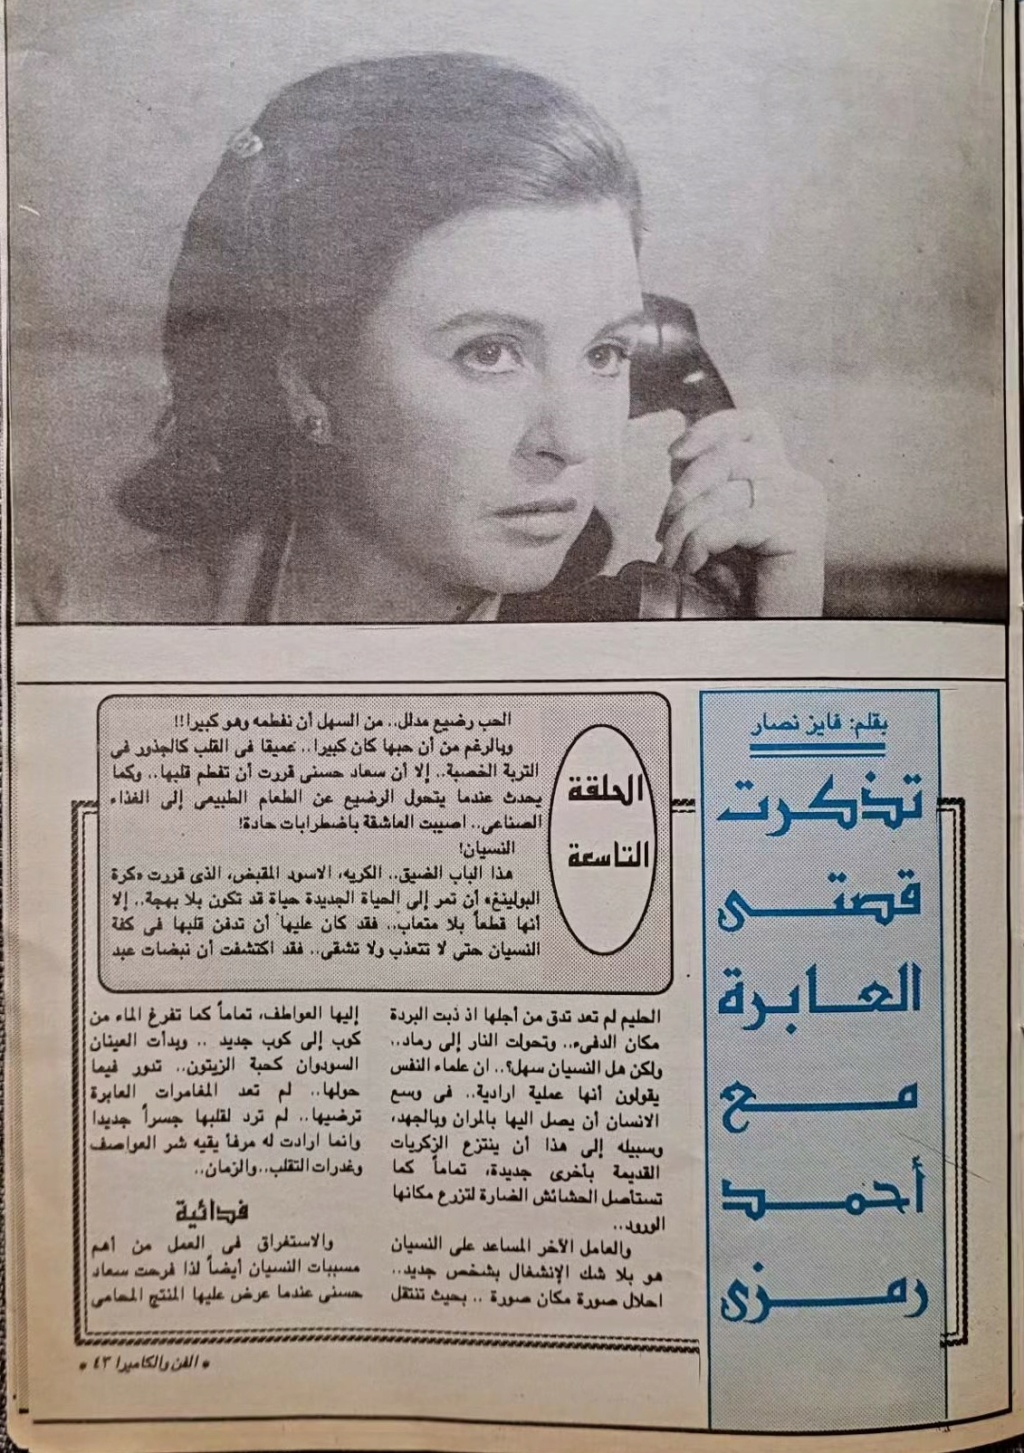 مقال صحفي : سعاد حسني تتذكر .. اختفيت وحبيبي الجديد وراء الأهرام 1992 م 289